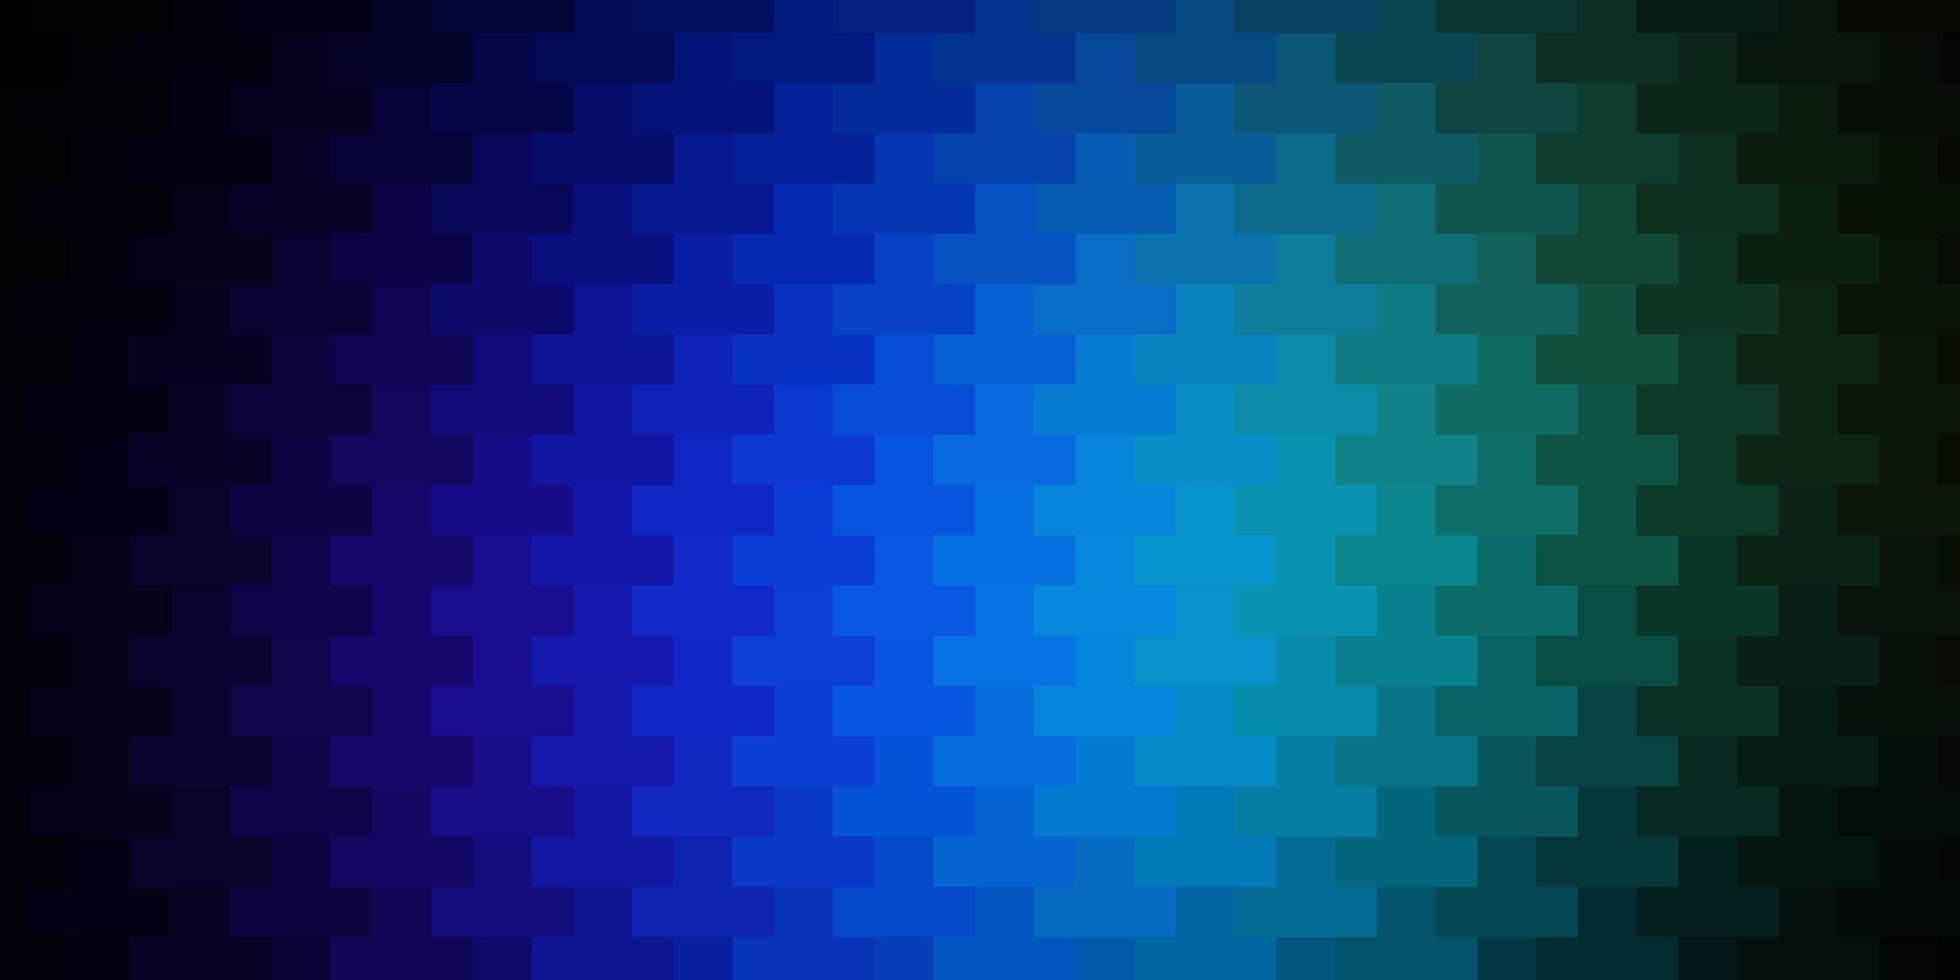 donkere veelkleurige vectorachtergrond in veelhoekige stijl. abstracte gradiëntillustratie met rechthoeken. patroon voor commercials, advertenties. vector